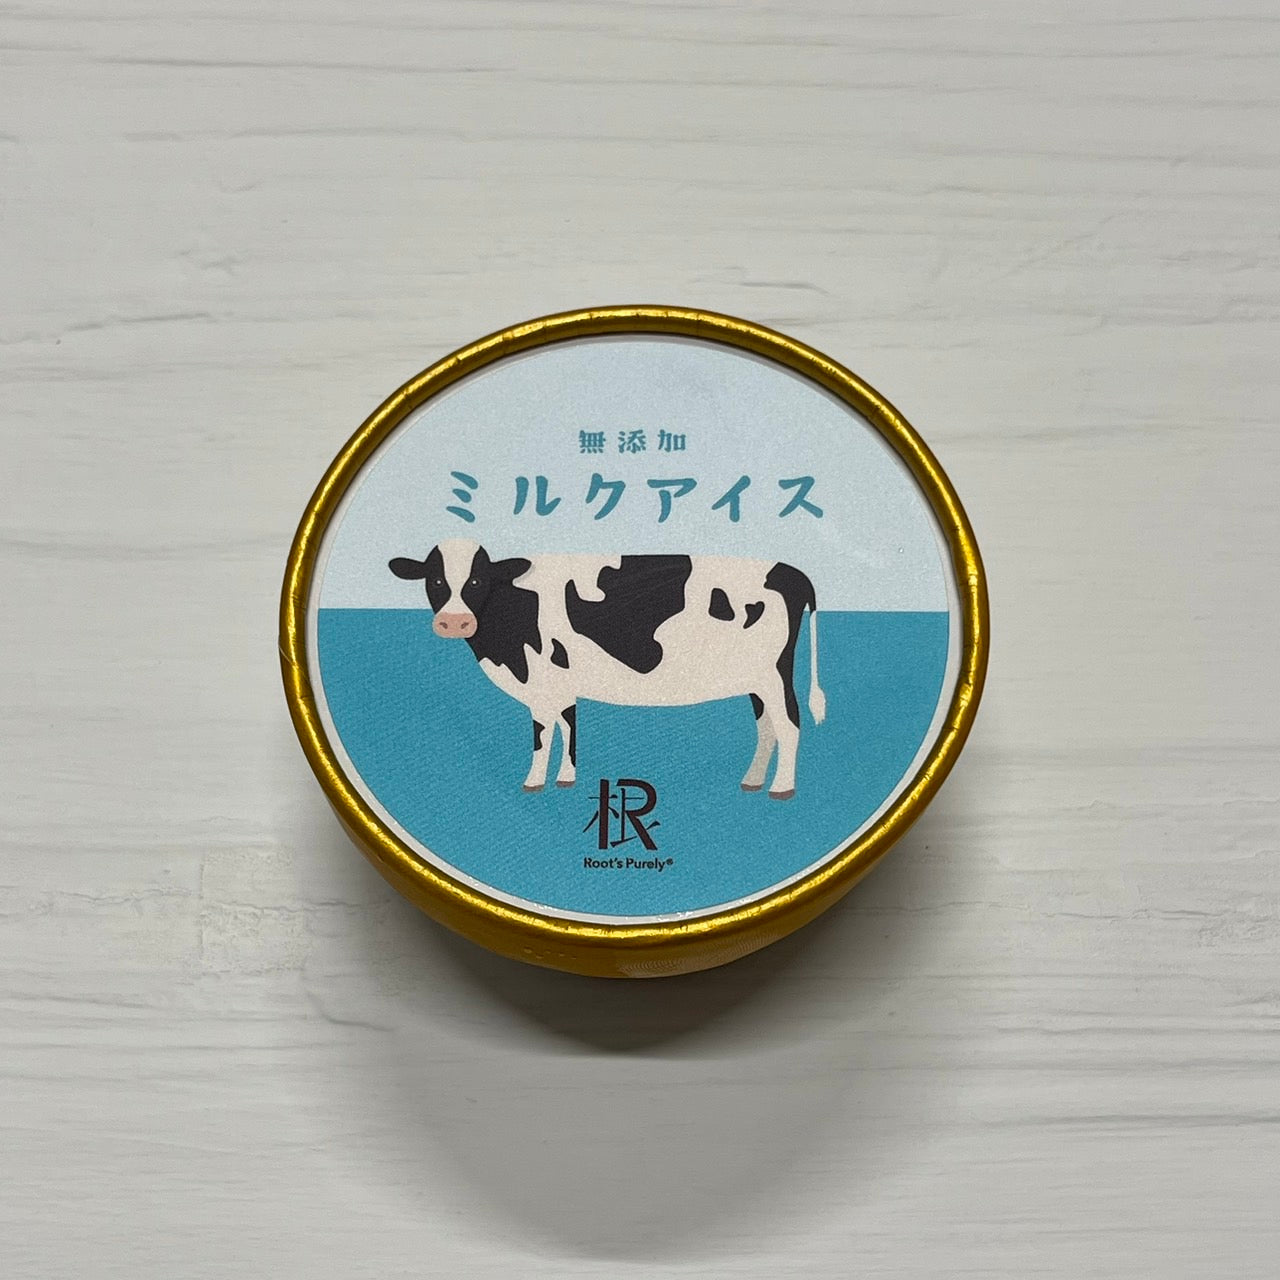 【ピュアリィオリジナル】~無添加~ミルクアイス